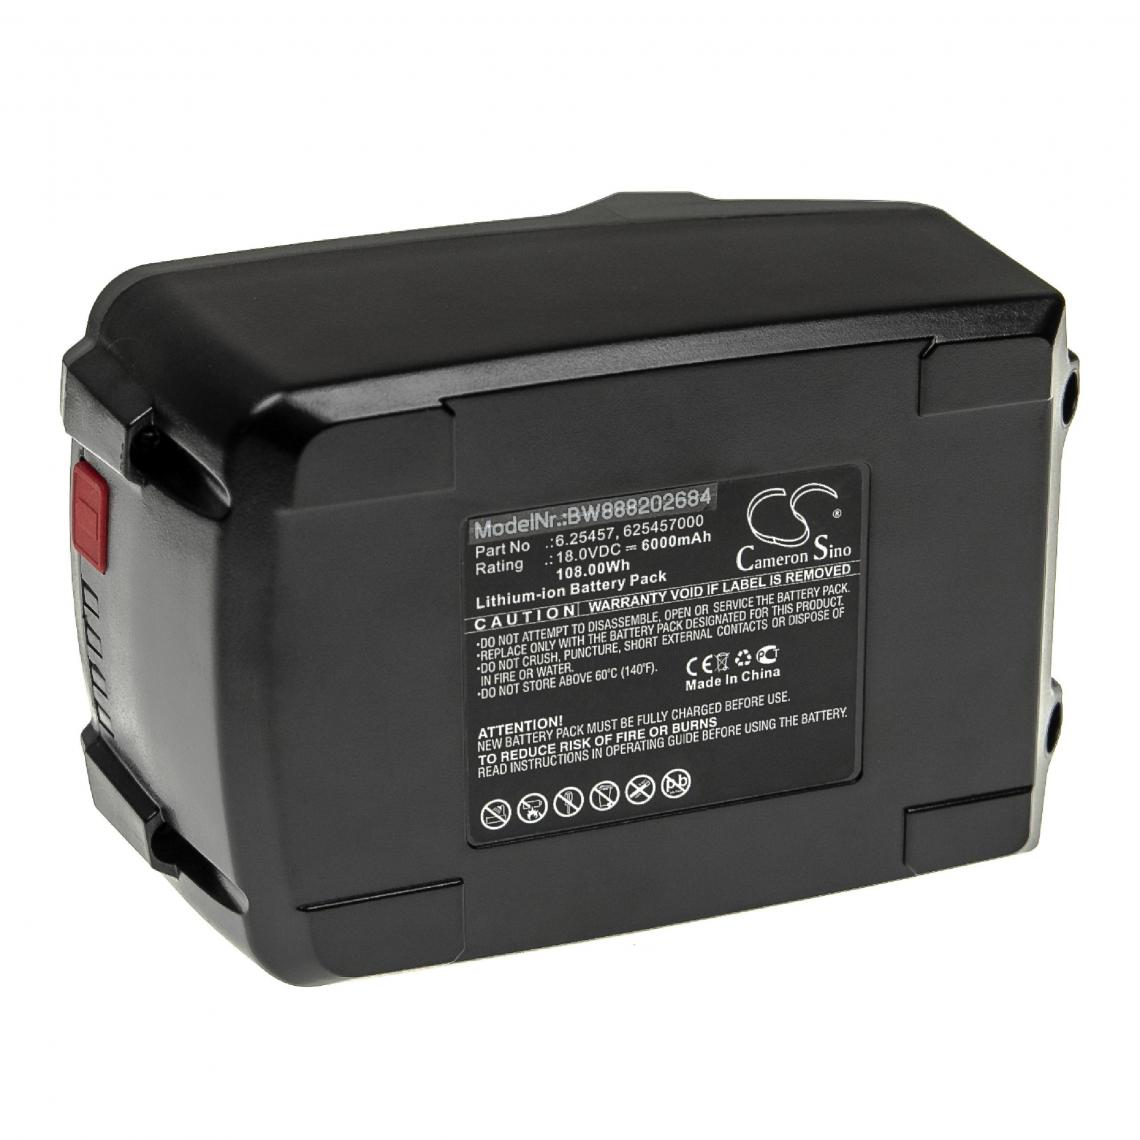 Vhbw - vhbw Batterie compatible avec Metabo KHA 36-18 LTX 32, KNS 18, KNS 18 LTX 150, KPA 18 LTX 400 outil électrique (6000mAh Li-ion 18 V) - Autre appareil de mesure